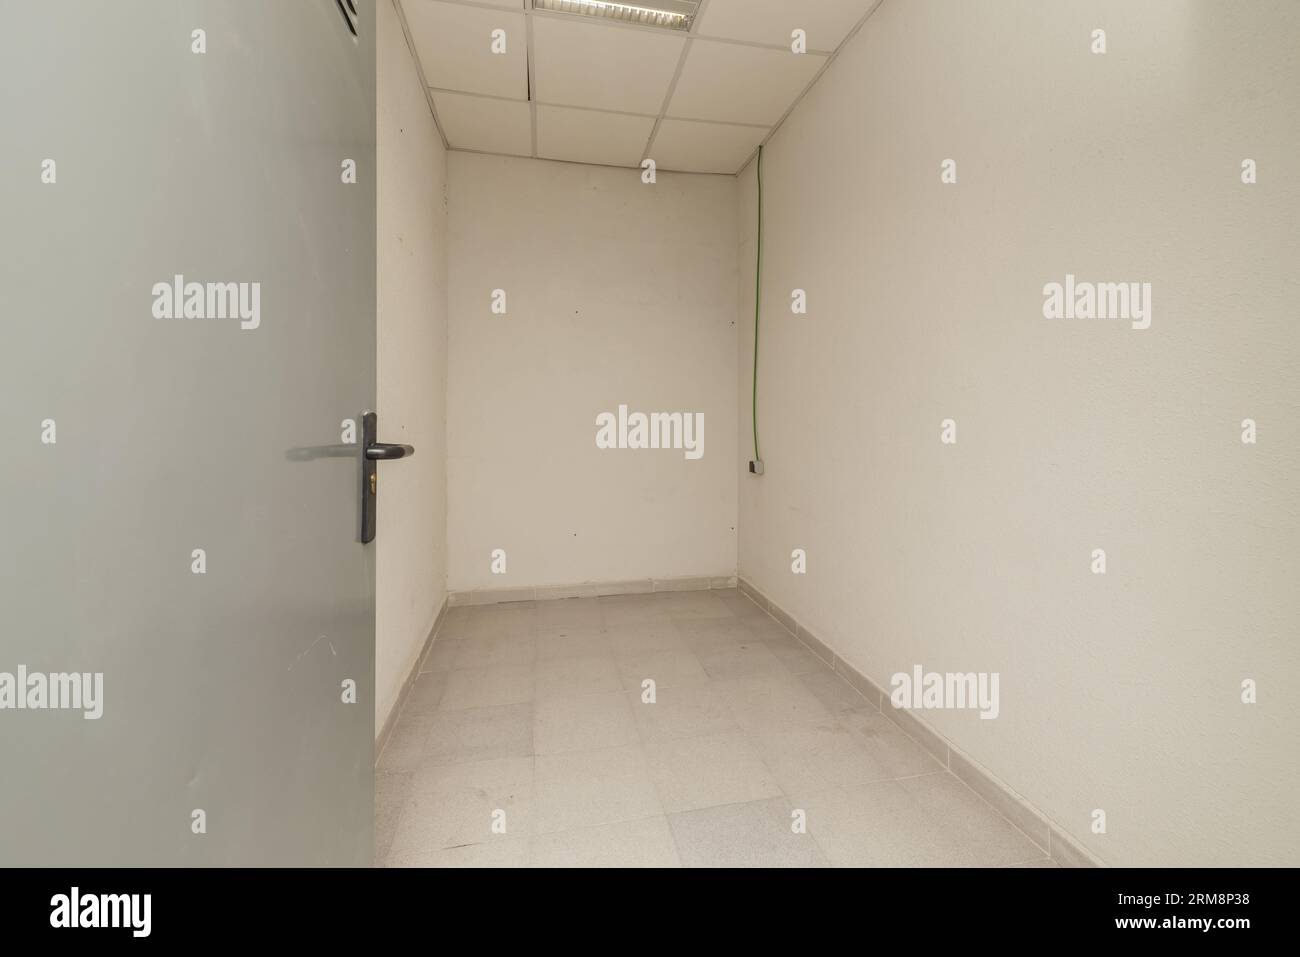 Une petite salle de stockage vide avec des plafonds techniques et des sols en céramique grise Banque D'Images